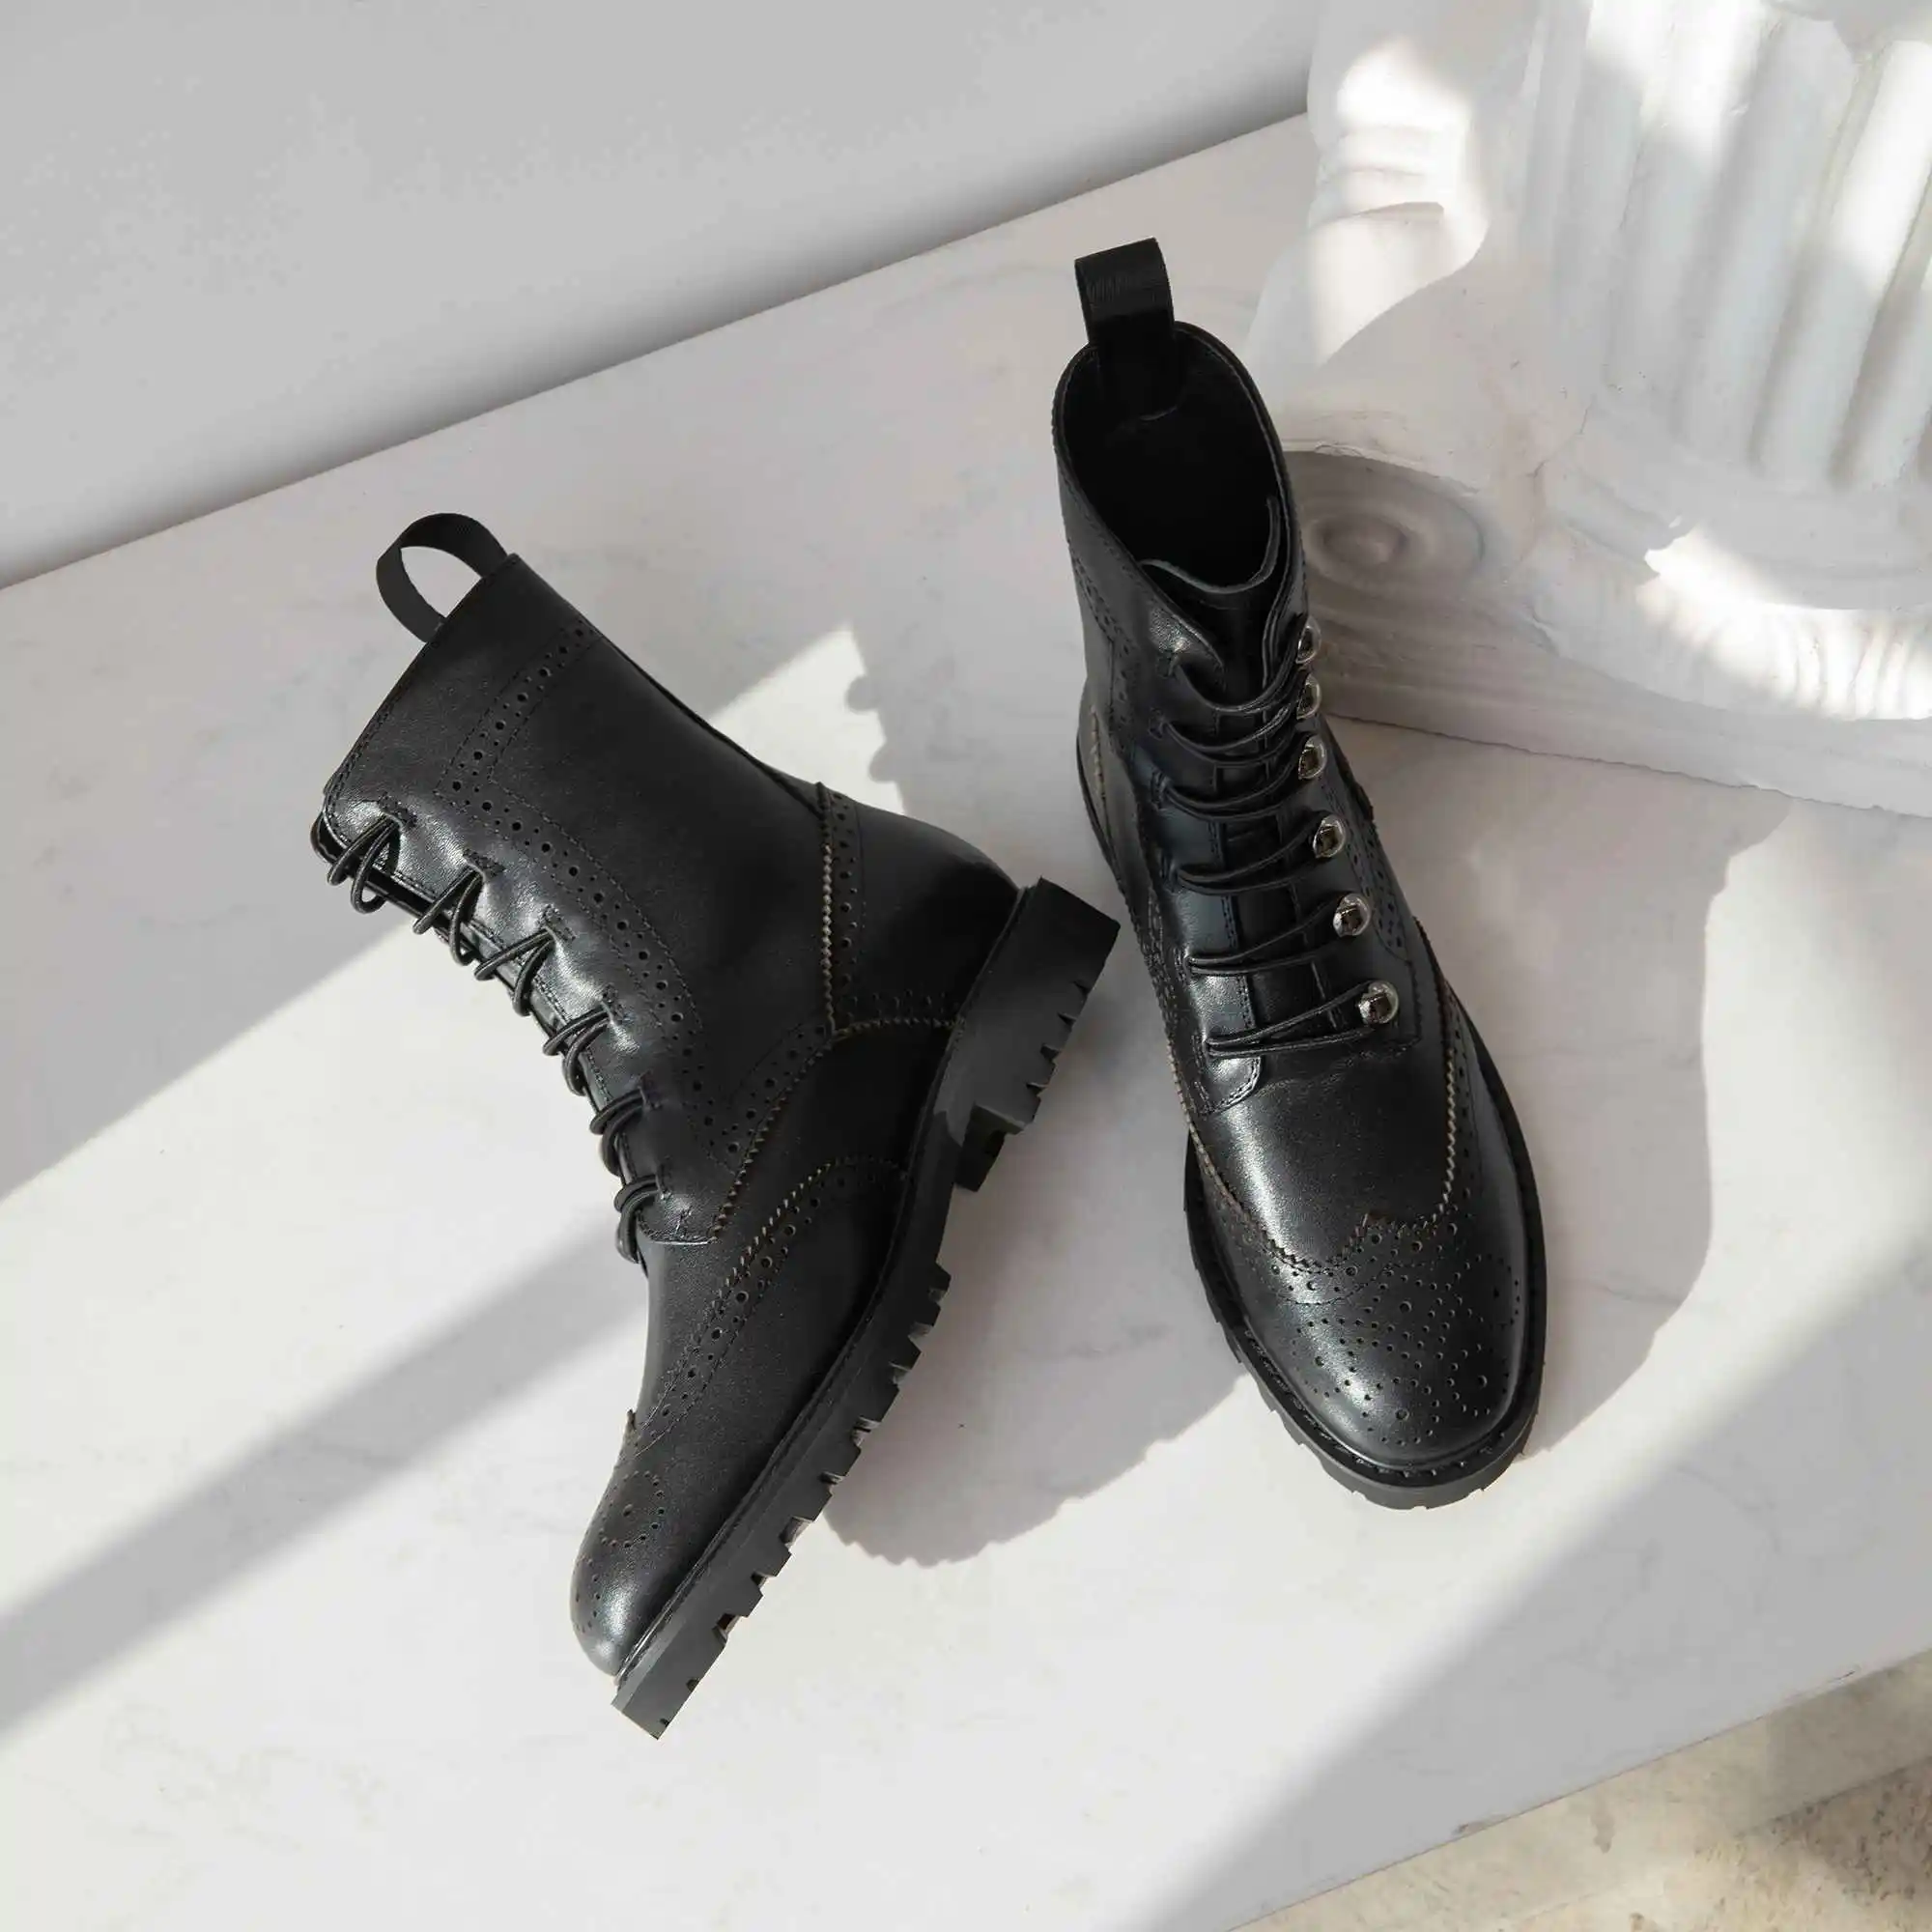 Lenkisen/ботинки с перфорацией типа «броги» из натуральной кожи; ботинки с металлическими украшениями и круглым носком; молодежные зимние теплые женские ботинки до середины икры; L39